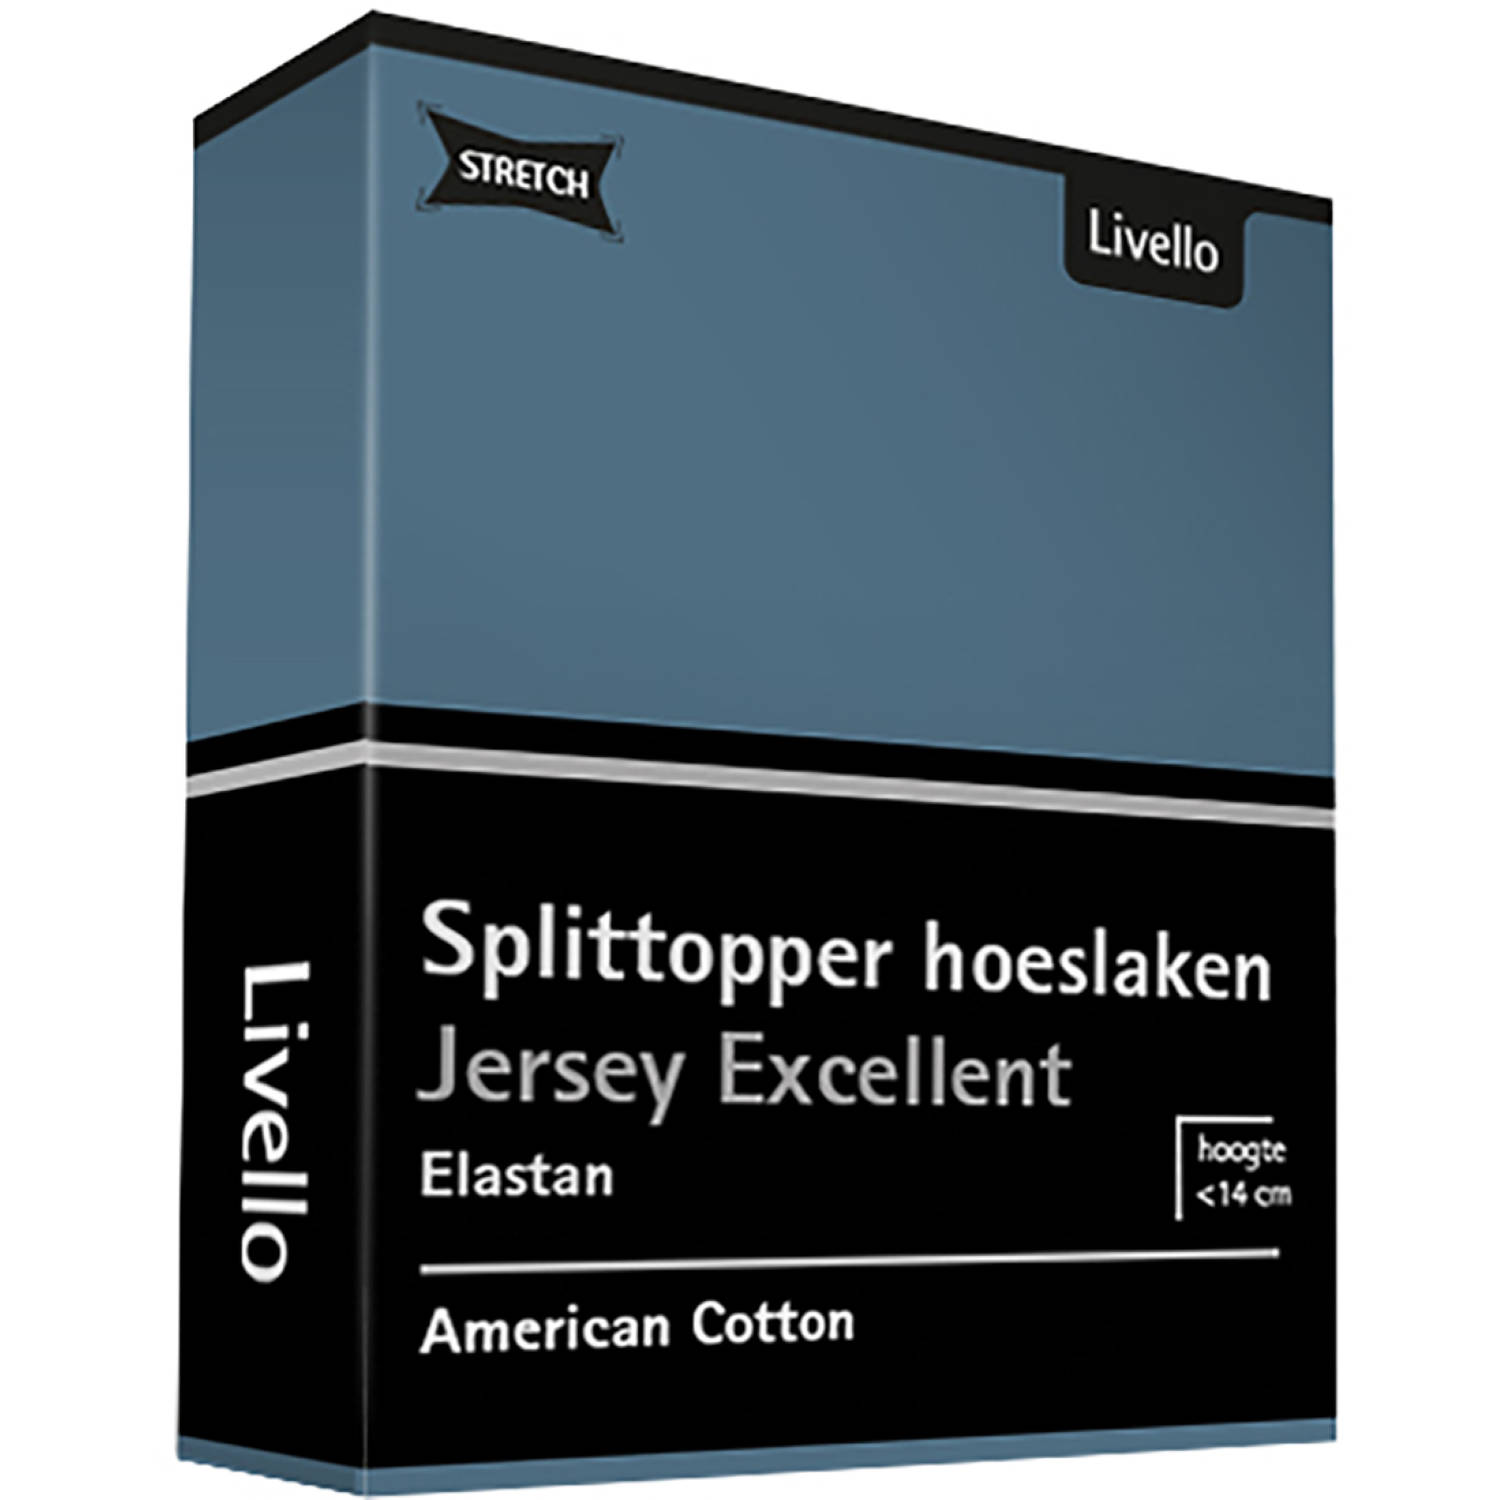 Livello Hoeslaken Splittopper Jersey Excellent Blue 180 x 200 cm